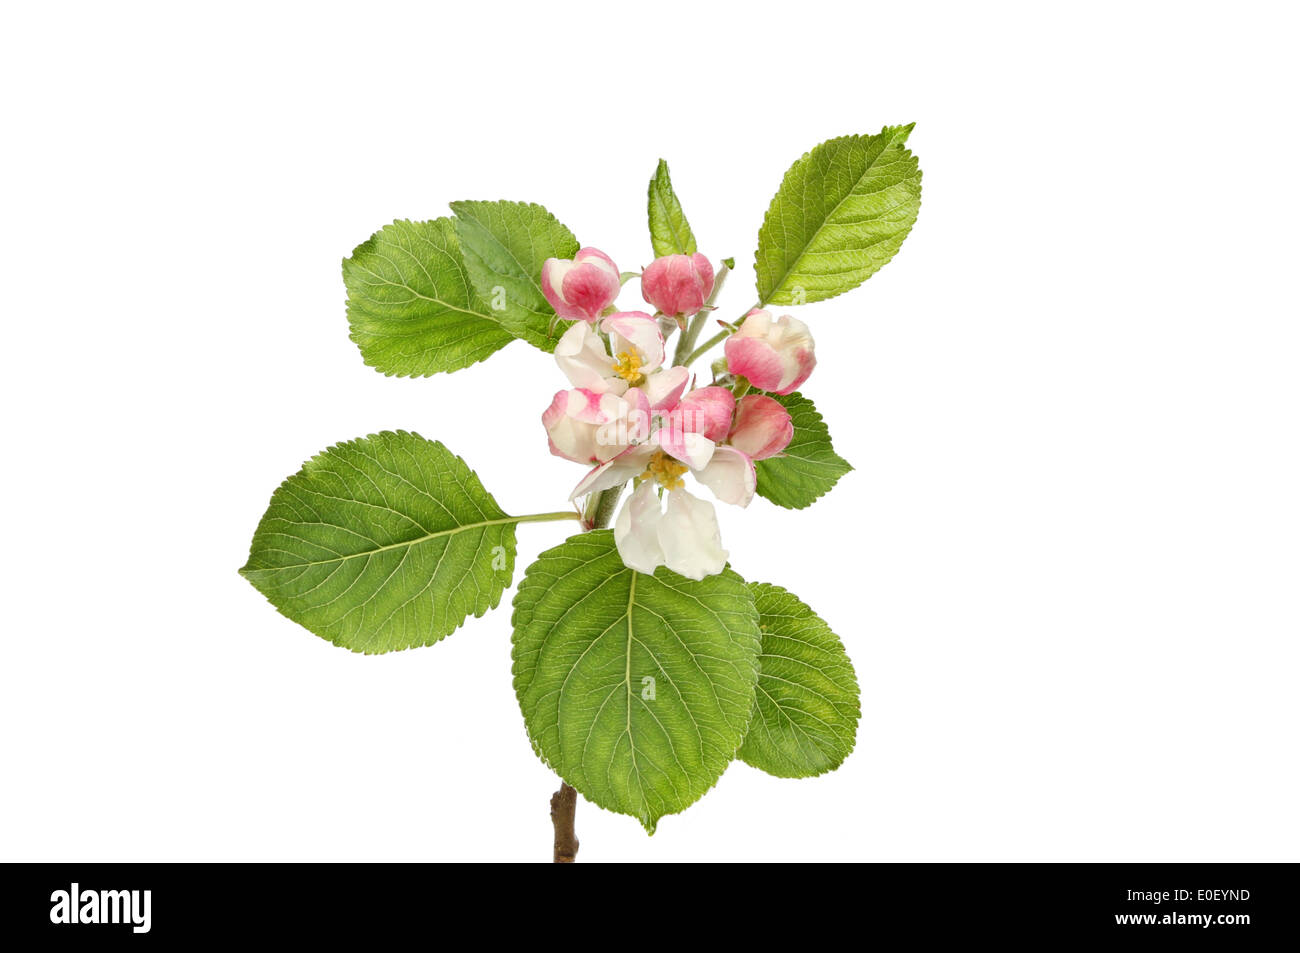 Apple Blossom y hojas verdes aislados contra un blanco Foto de stock